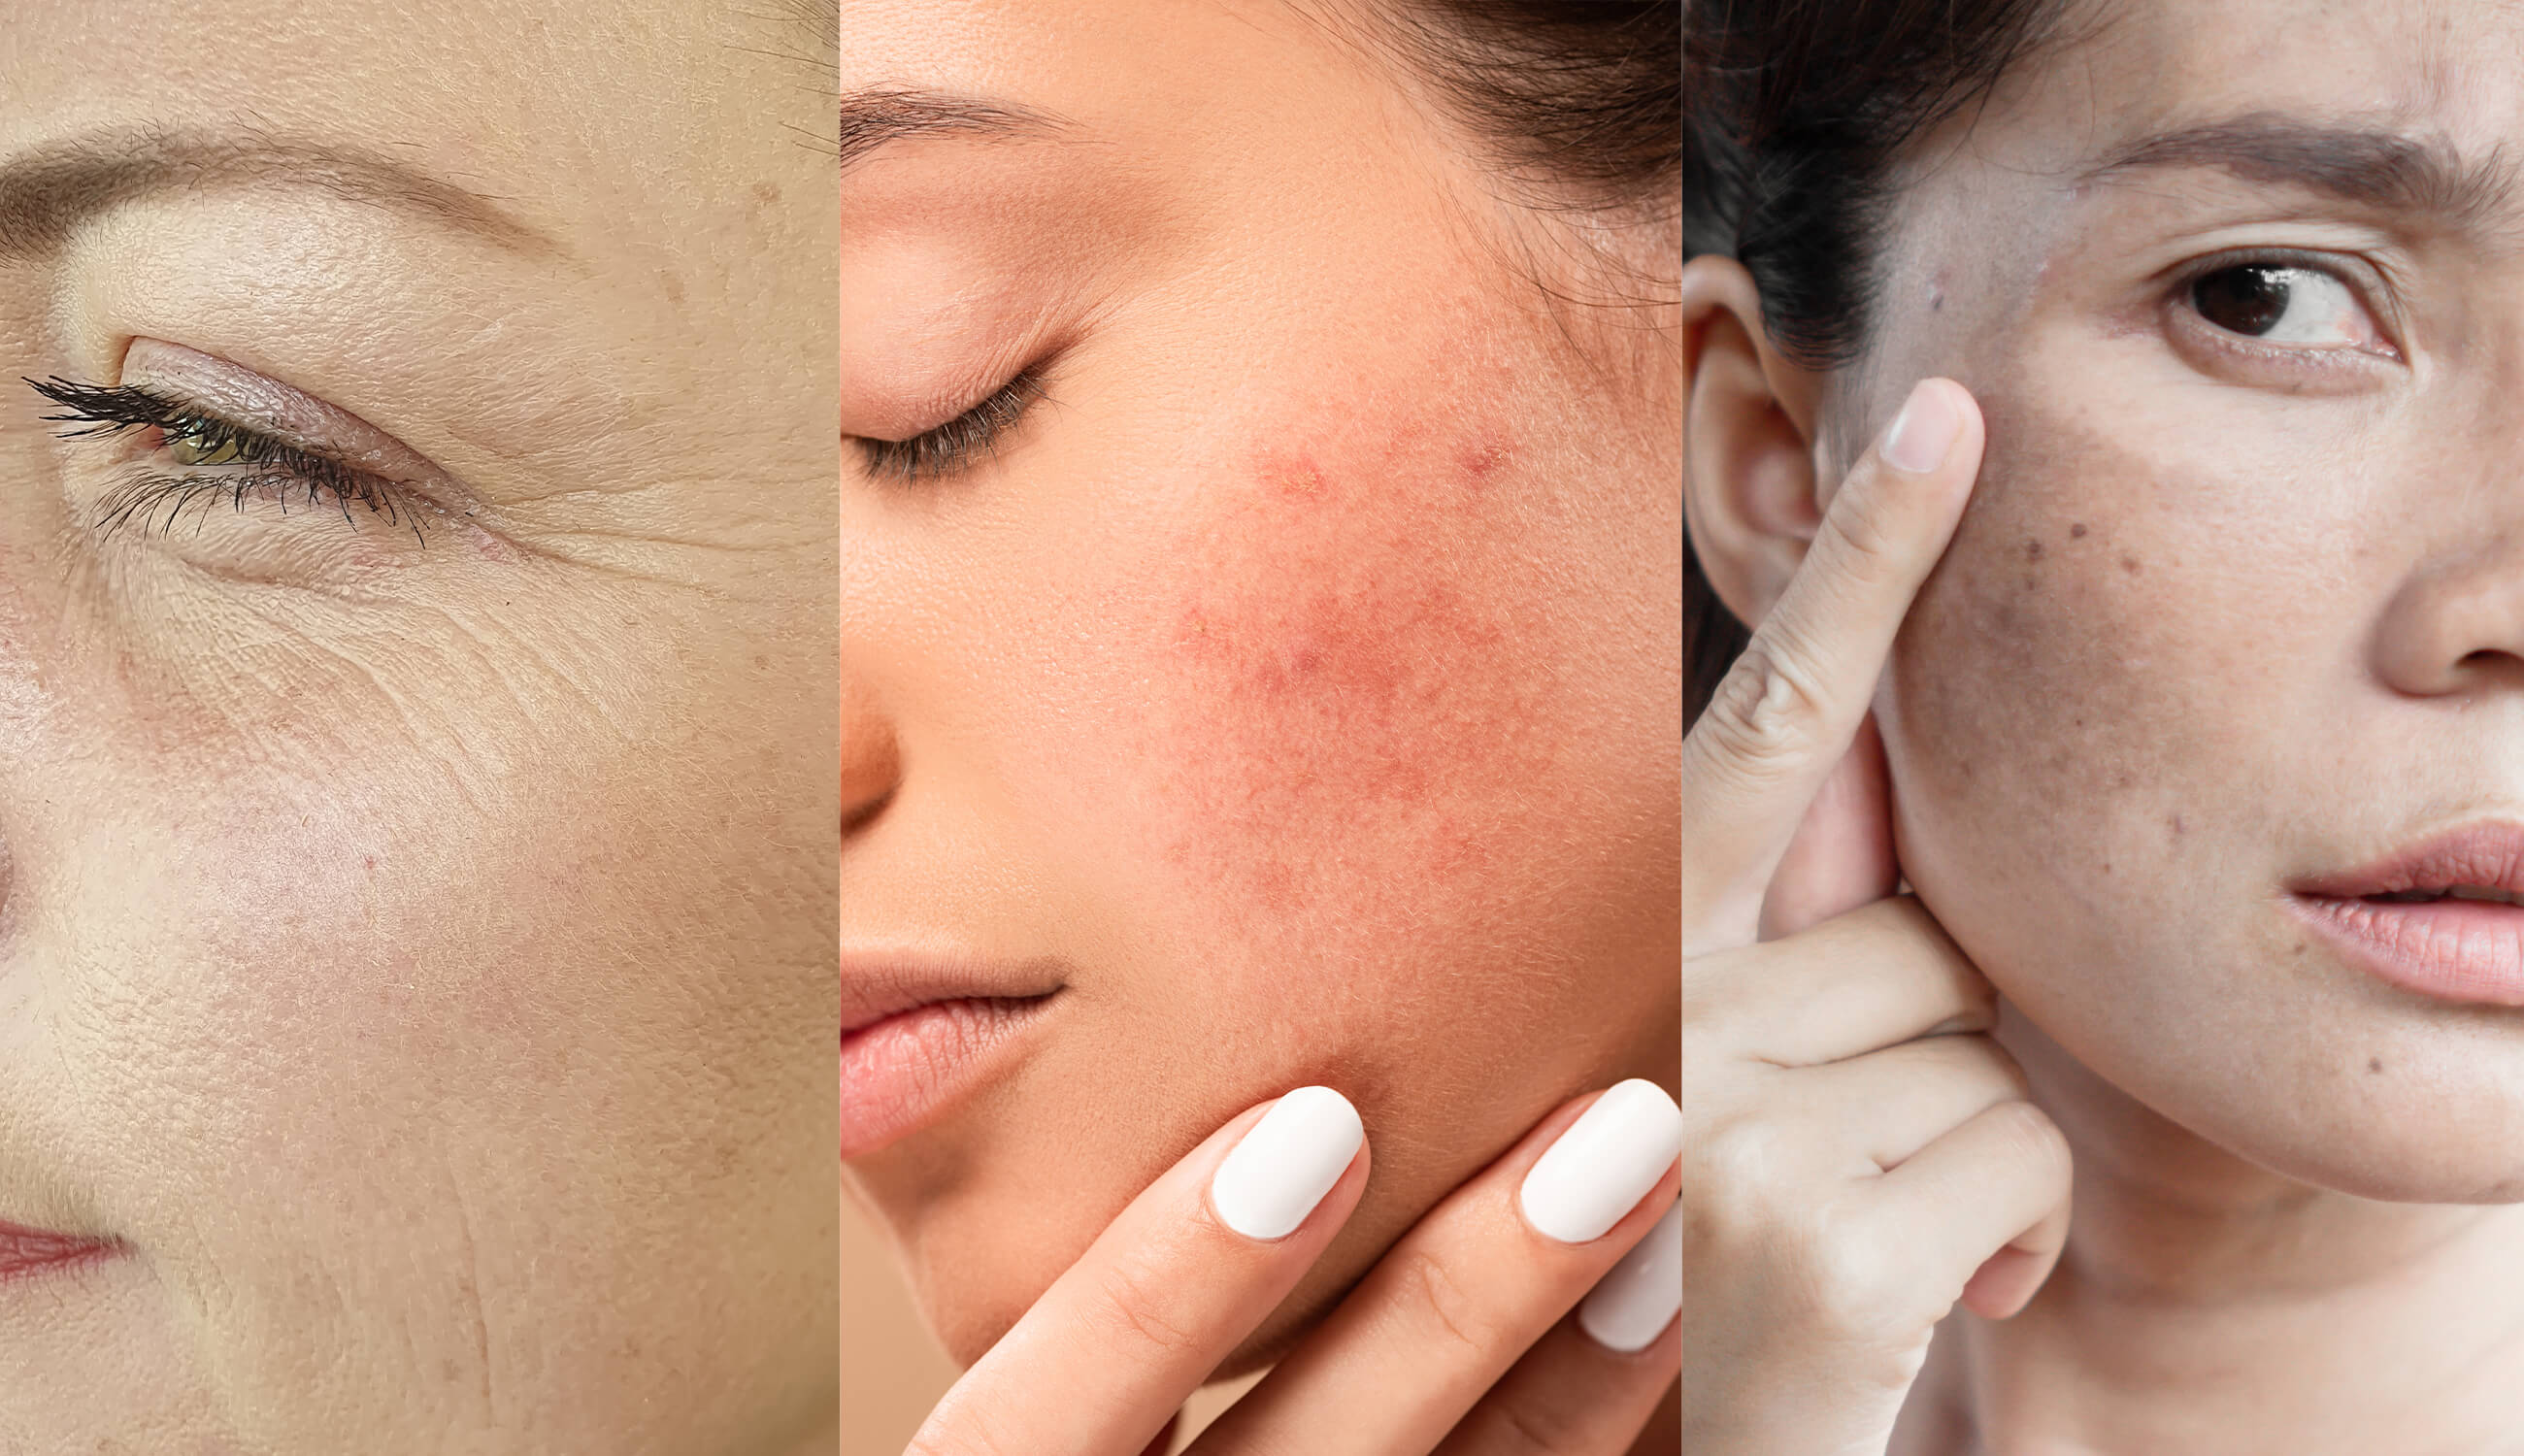 Wrinkles, acne spots, melasma